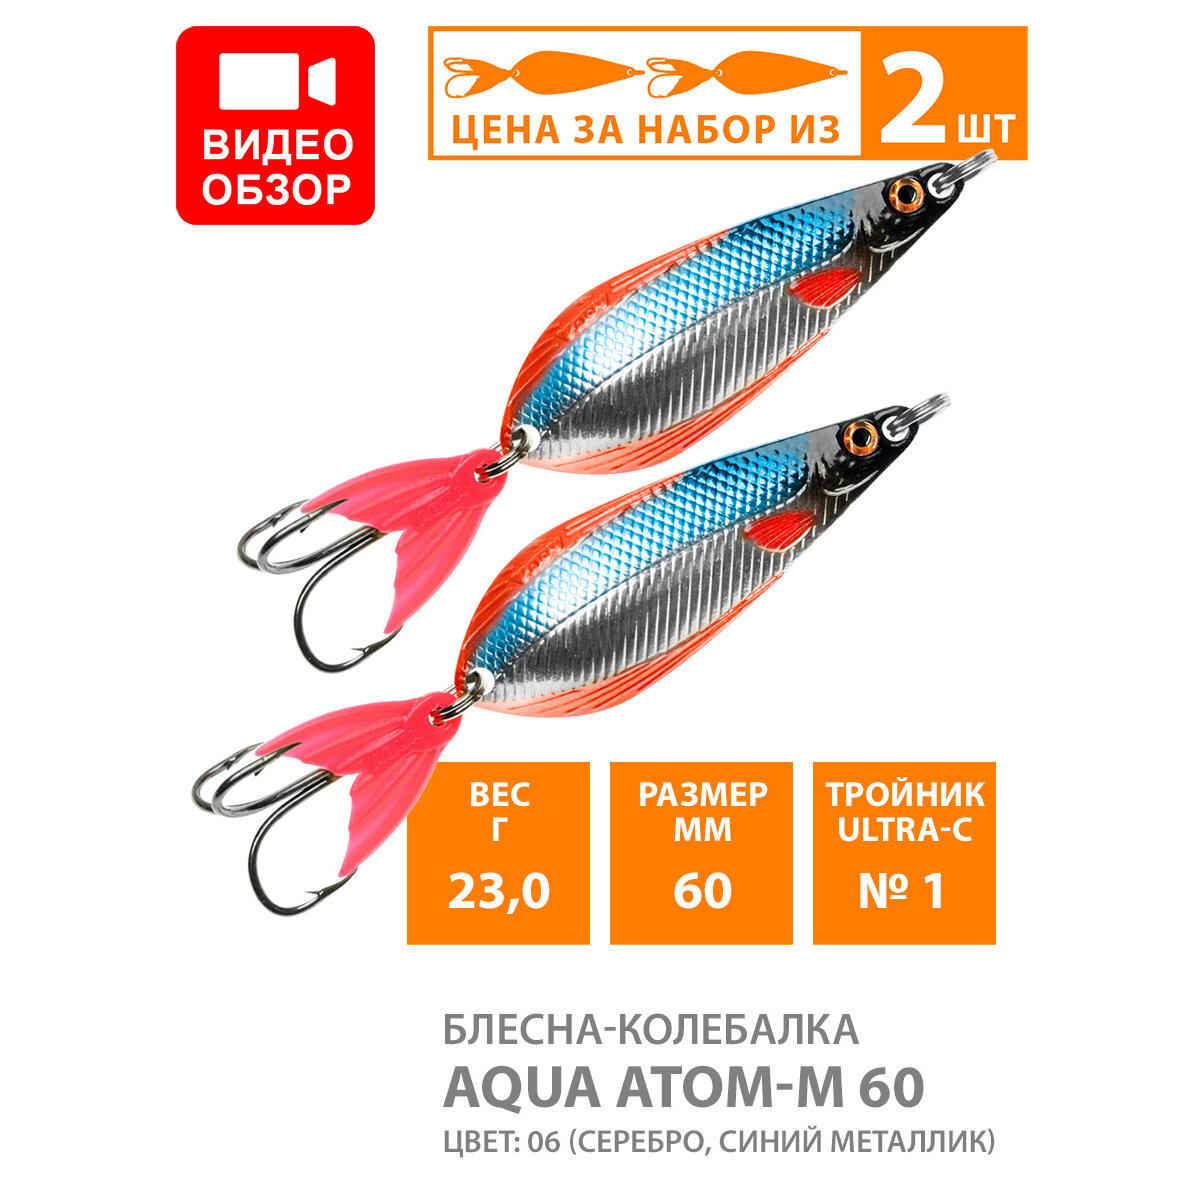 Блесна колебалка для рыбалки AQUA Атом M 60mm 23g цвет 06 2шт